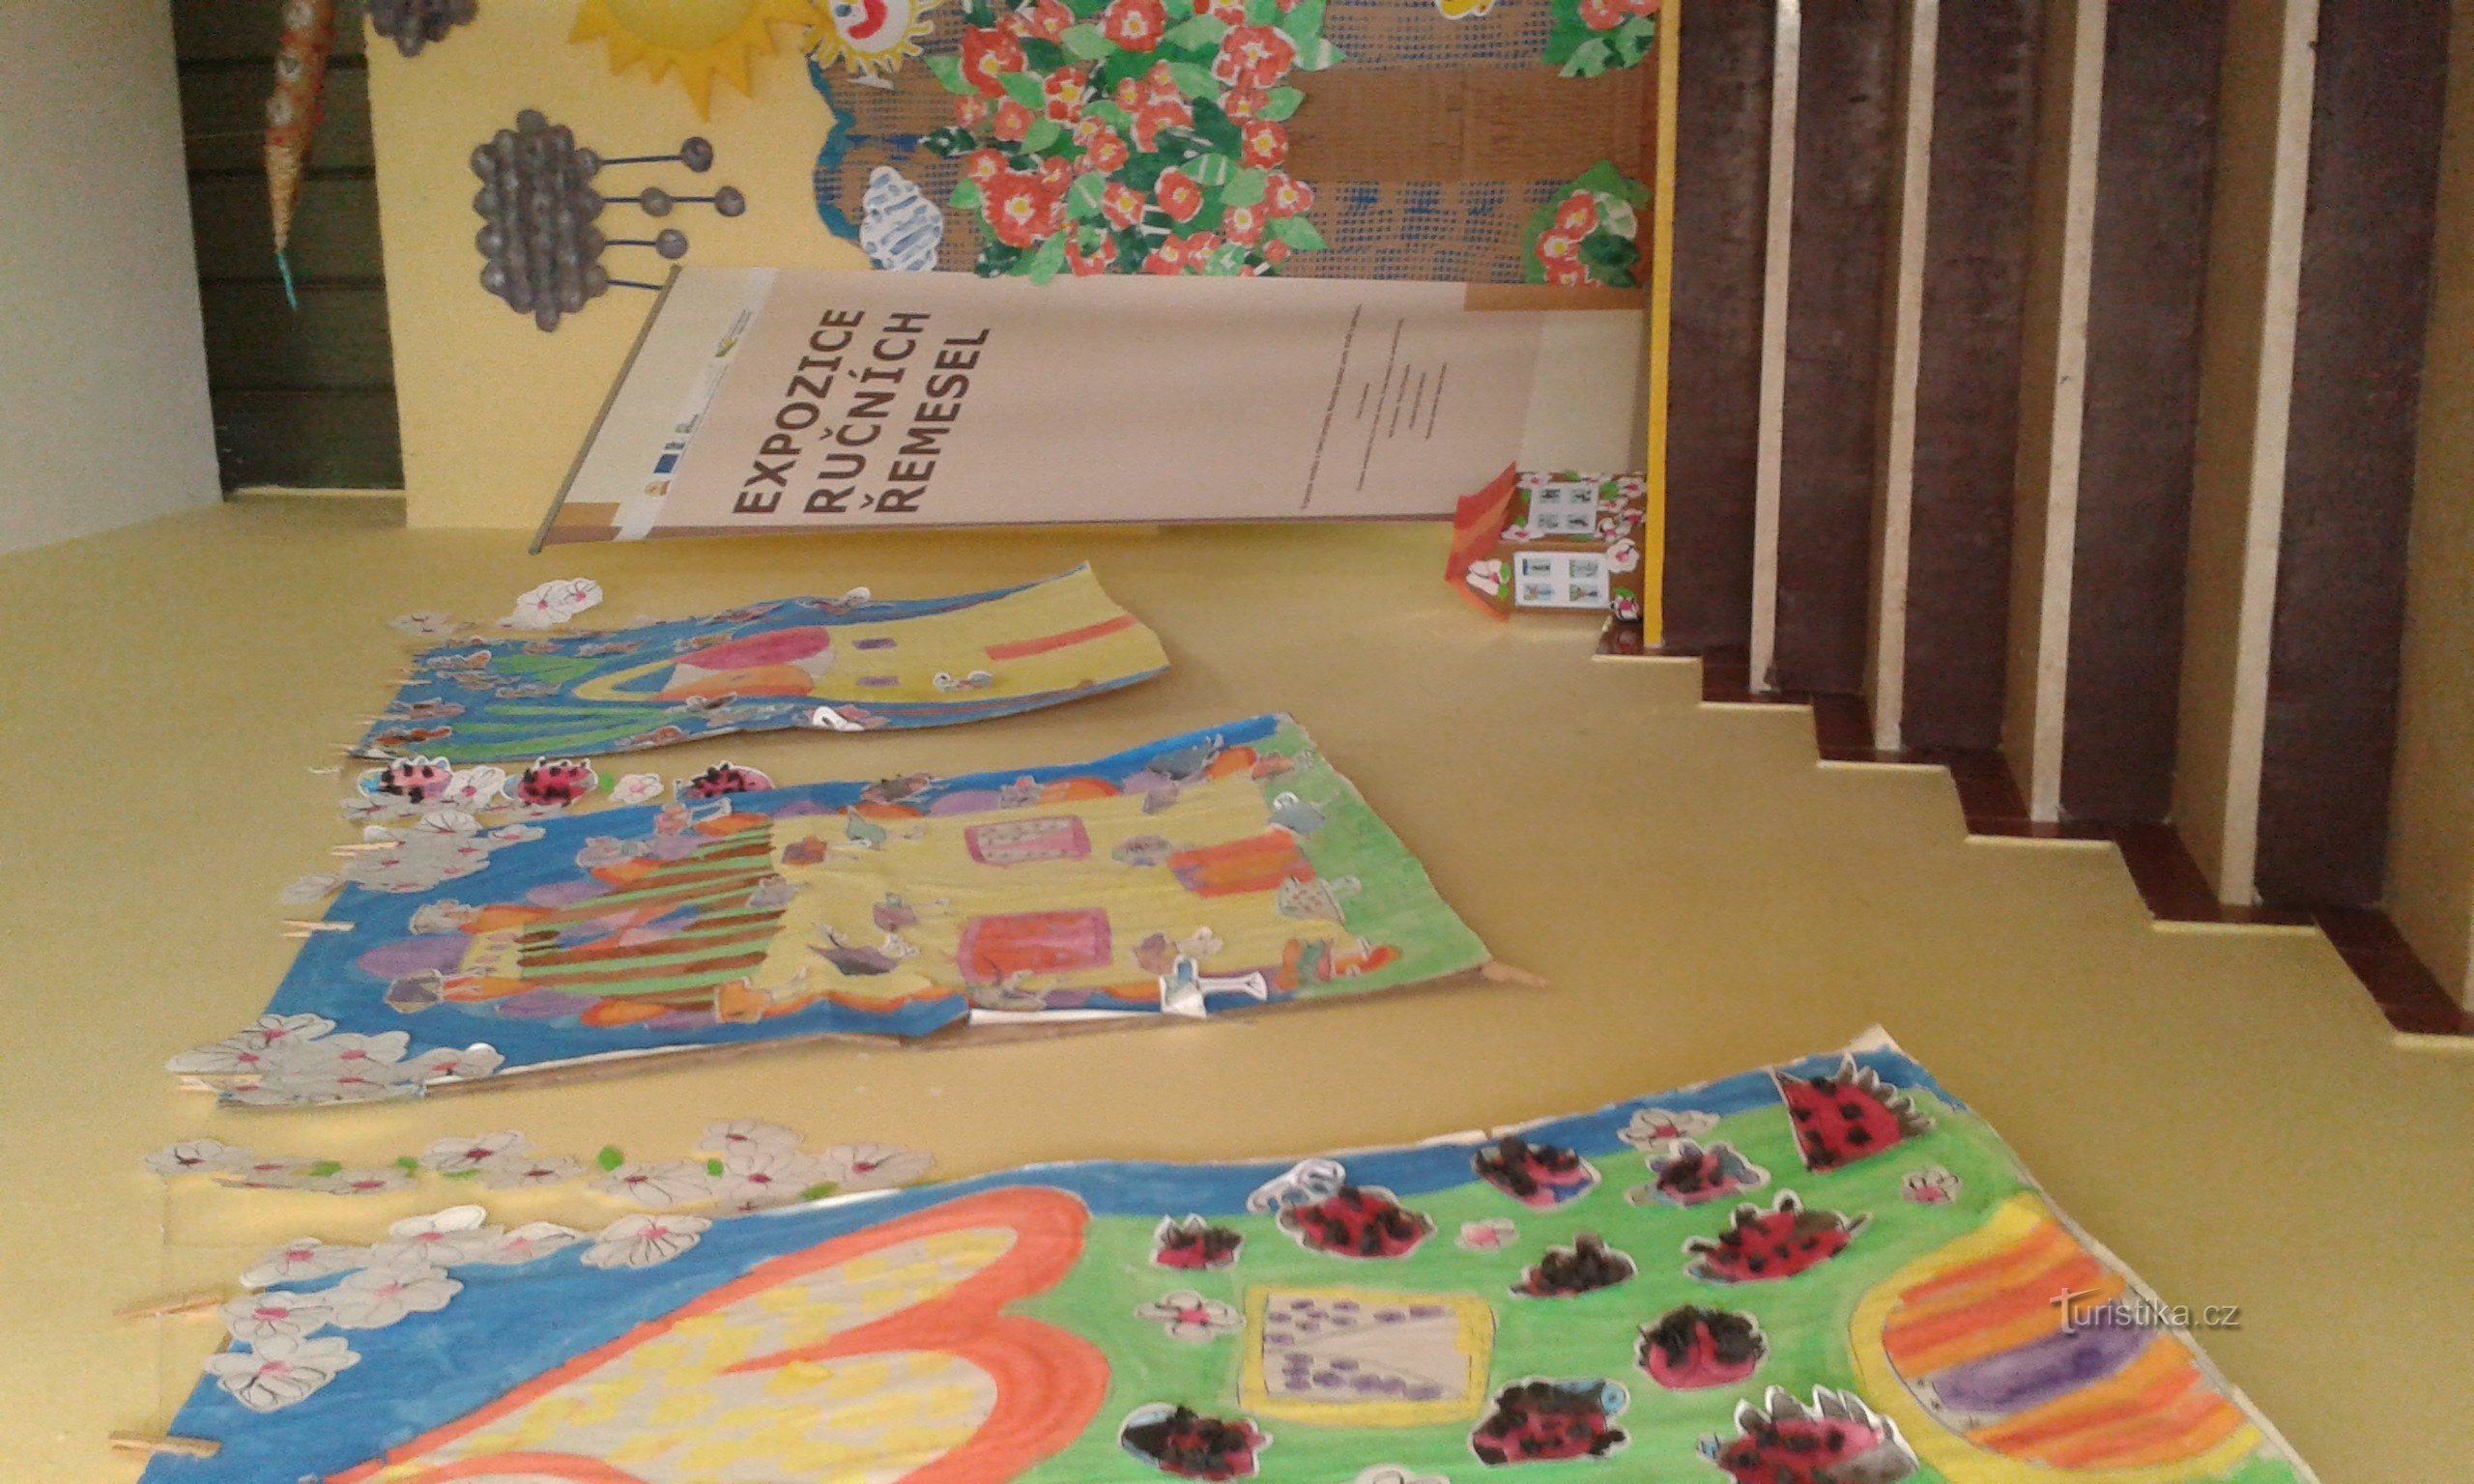 hodnik, okrašen z otroškimi risbami